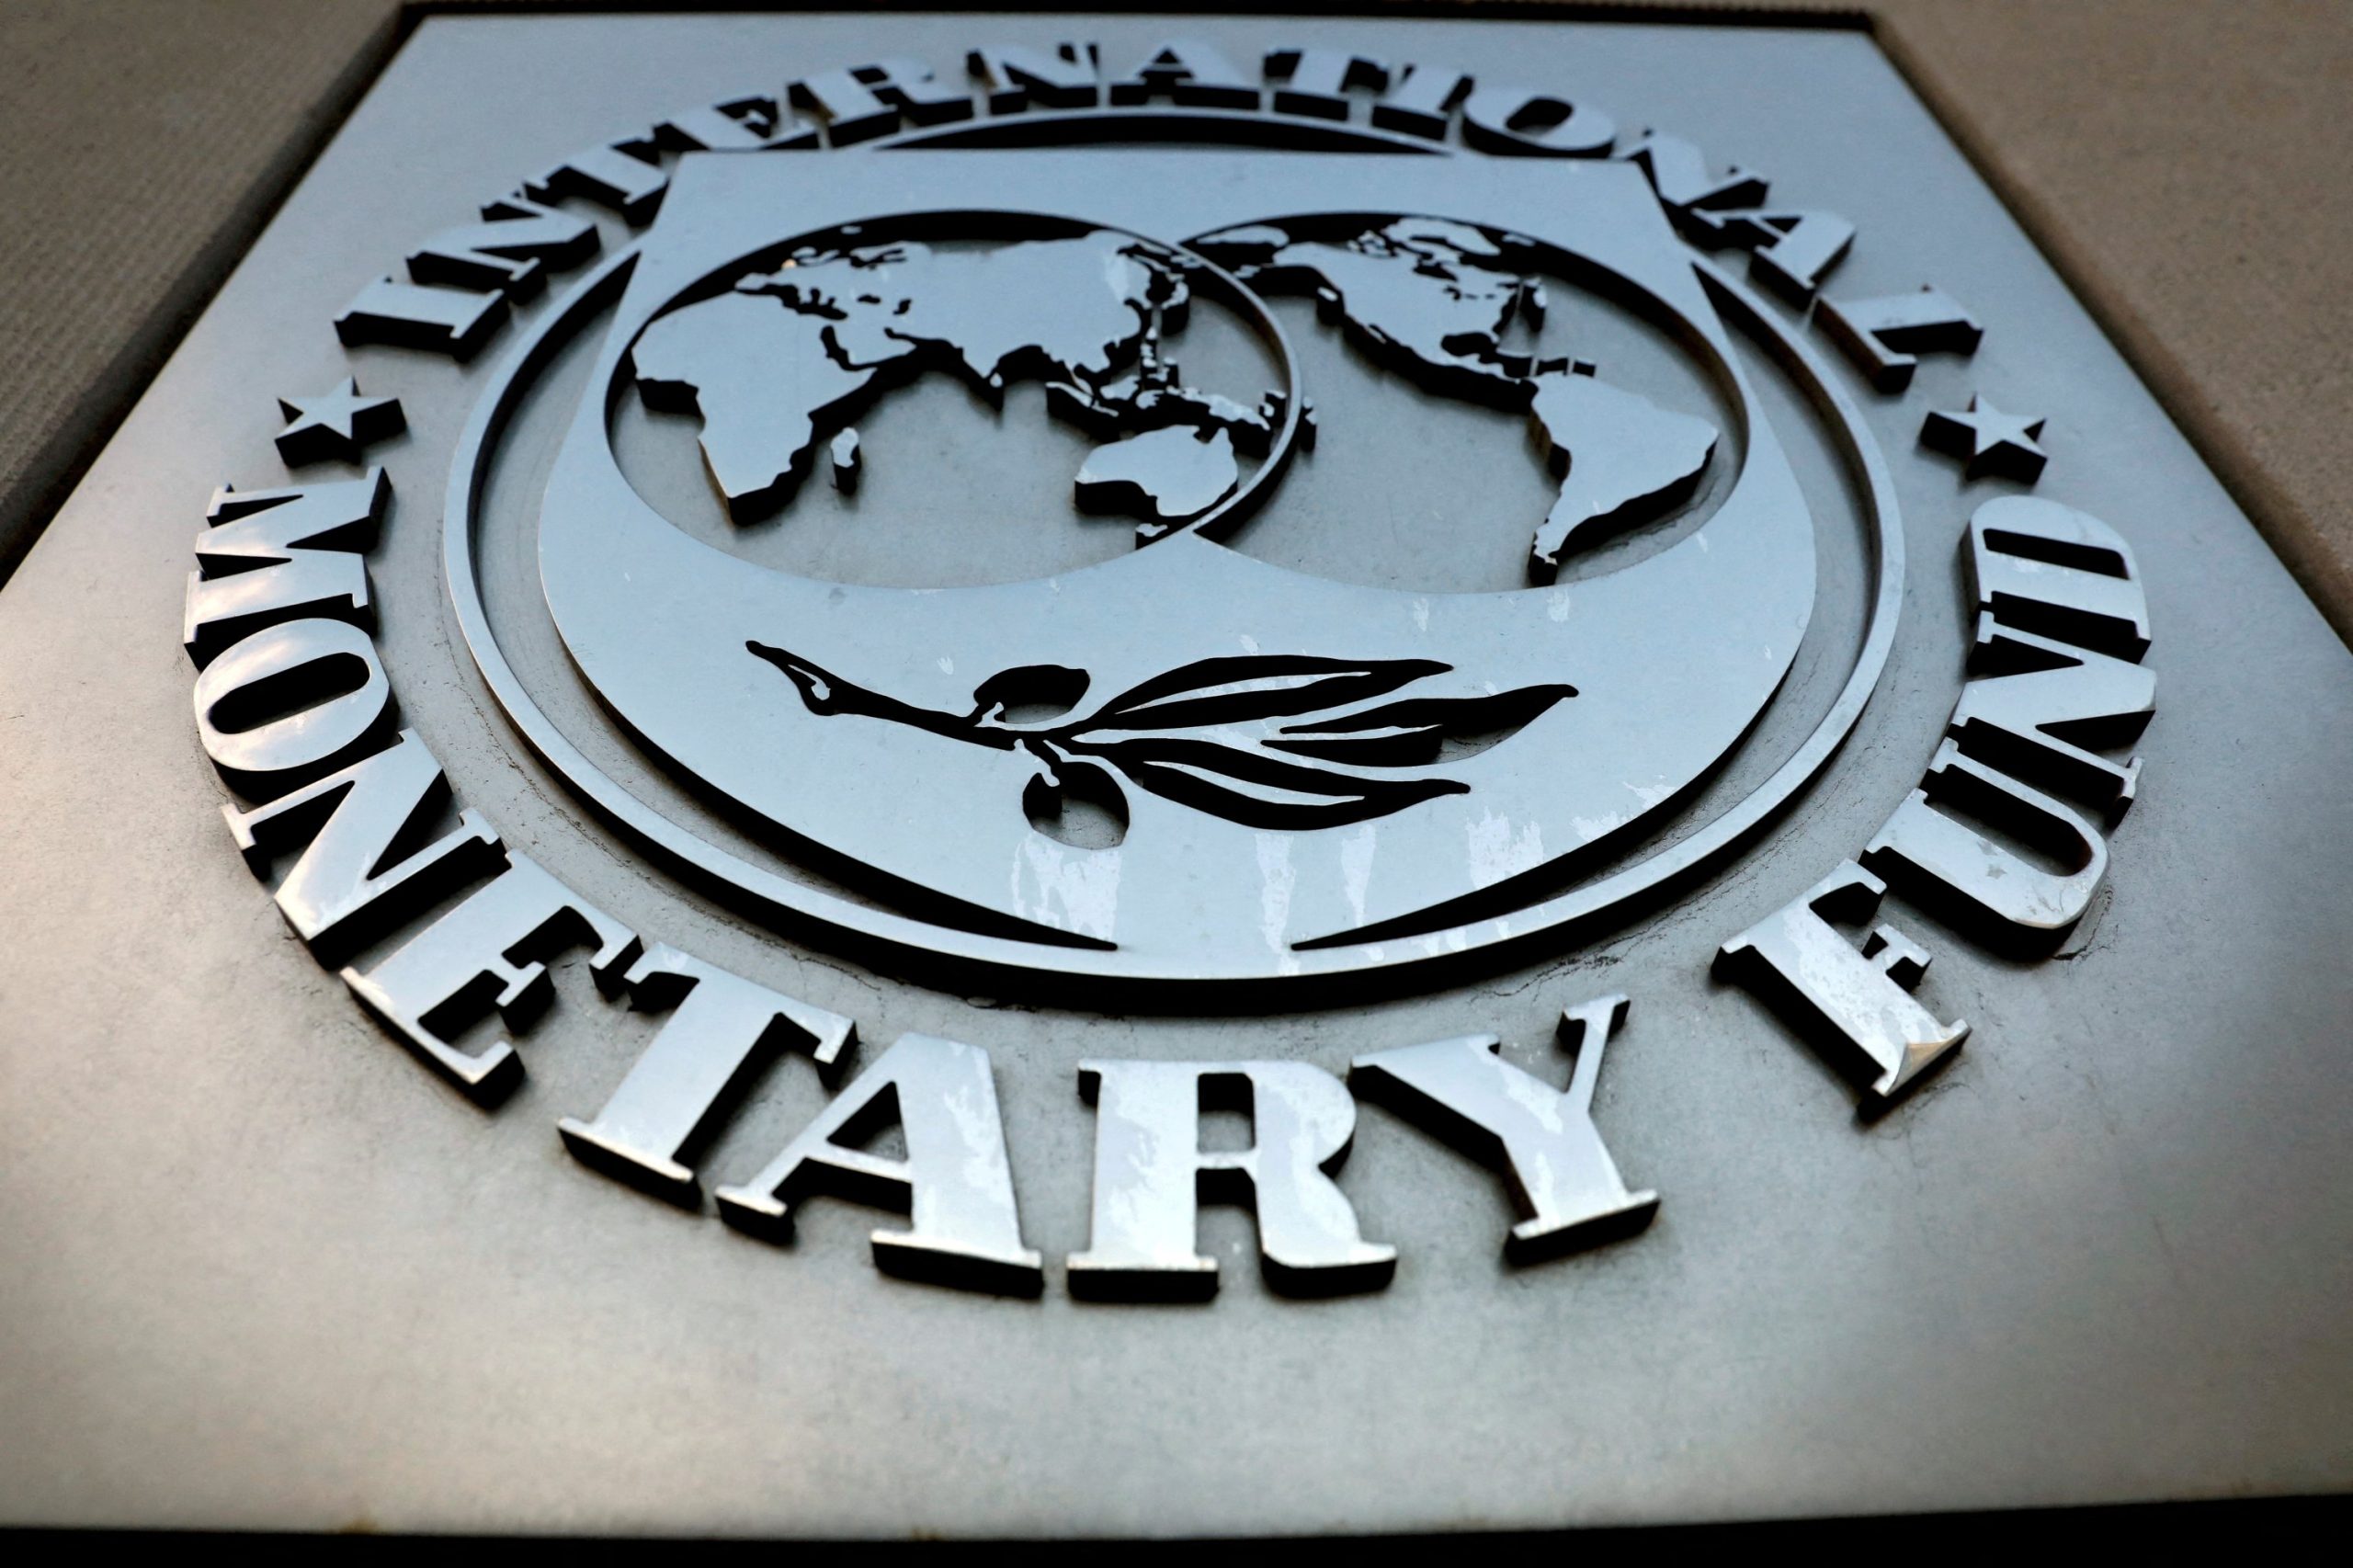 ΔΝΤ: «Η κατάσχεση ρωσικών περιουσιακών στοιχείων μπορεί να προκαλέσει κατάρρευση του παγκόσμιου νομισματικού συστήματος»